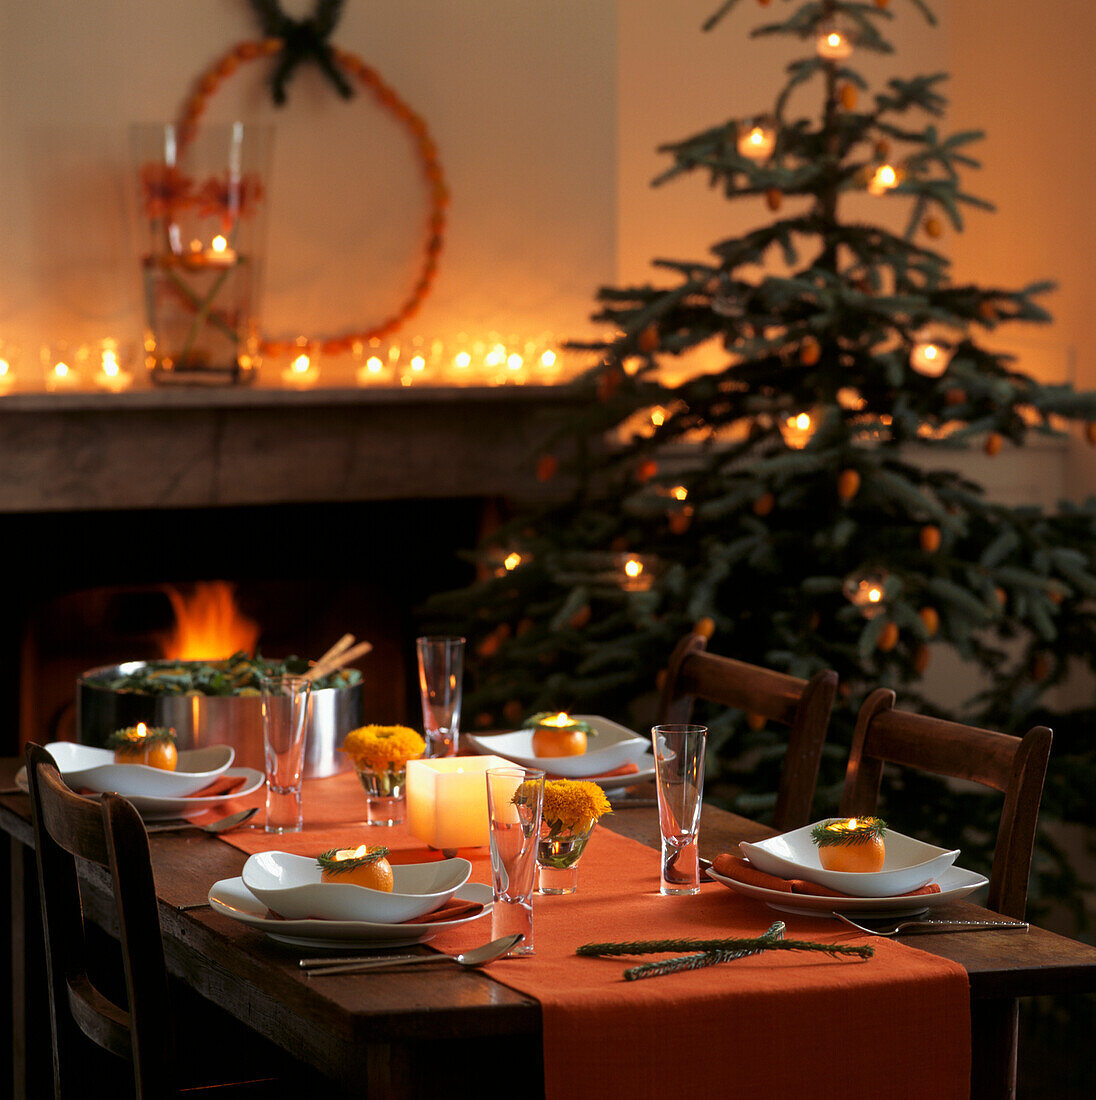 Weihnachtlich gedeckter Tisch in Orangetönen mit offenem Feuer und flackernden Kerzen